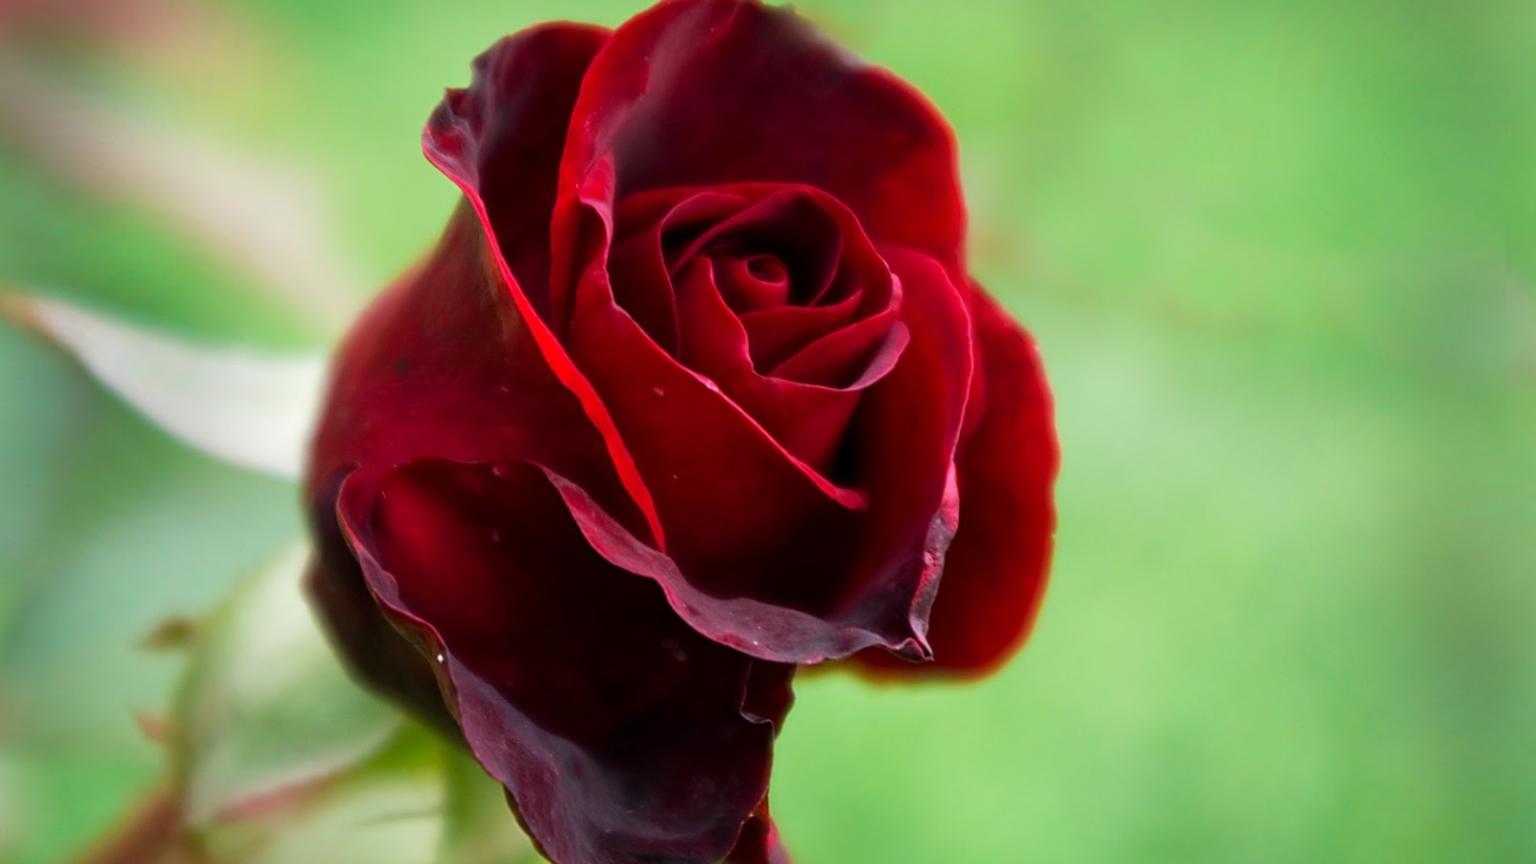 rose wallpaper hd,flor,planta floreciendo,rosas de jardín,rojo,pétalo